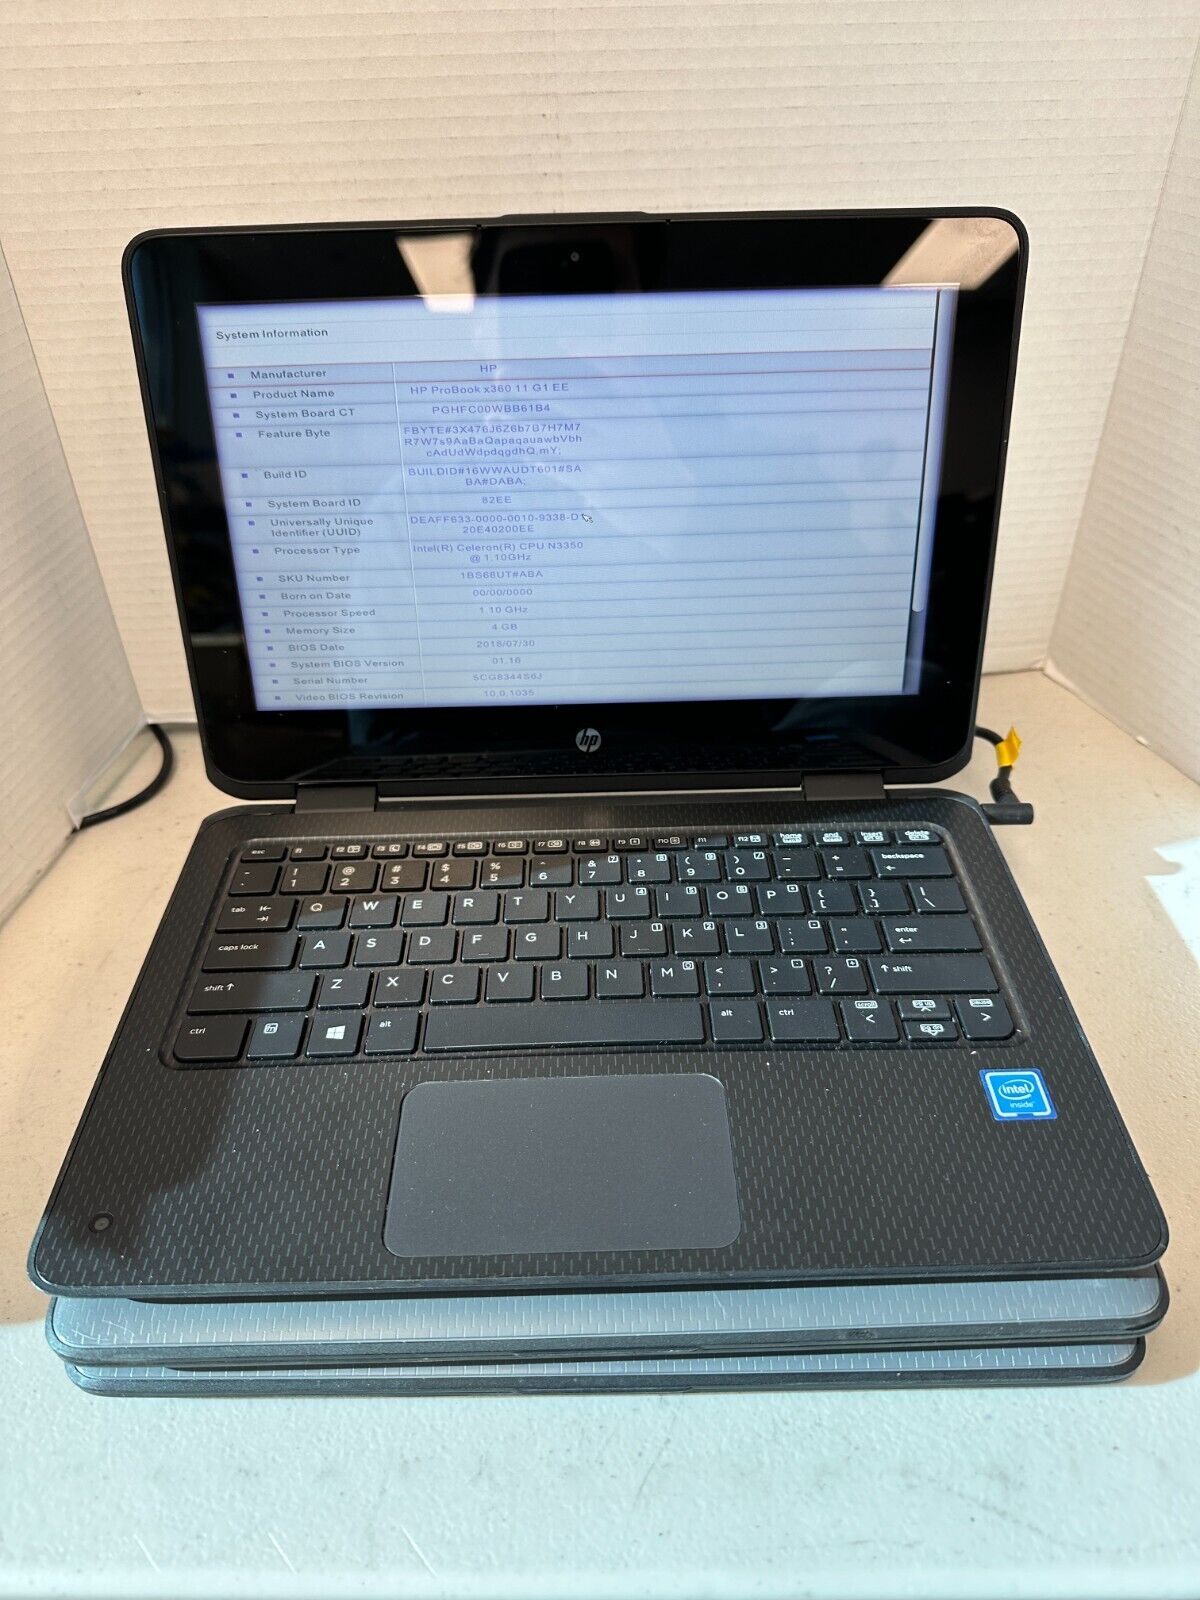 (LOT OF 3) HP Probook x360 11 g1 ee N3350 @ 1.1GHz, 4GB RAM, NO SSD, NO AC #04